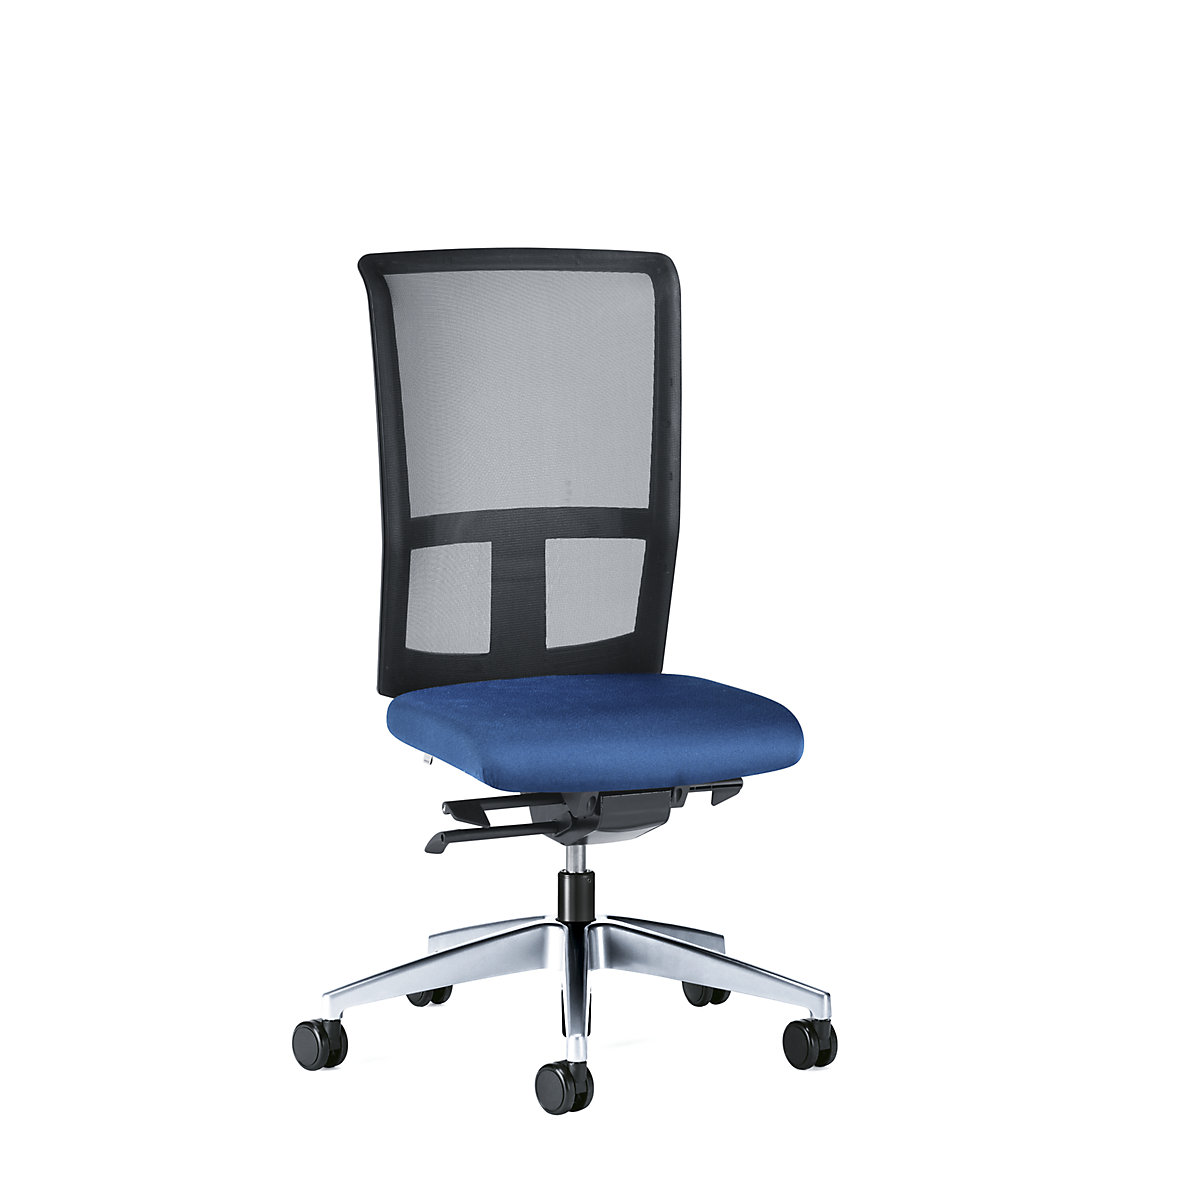 Kancelárska otočná stolička GOAL AIR, výška operadla 545 mm – interstuhl